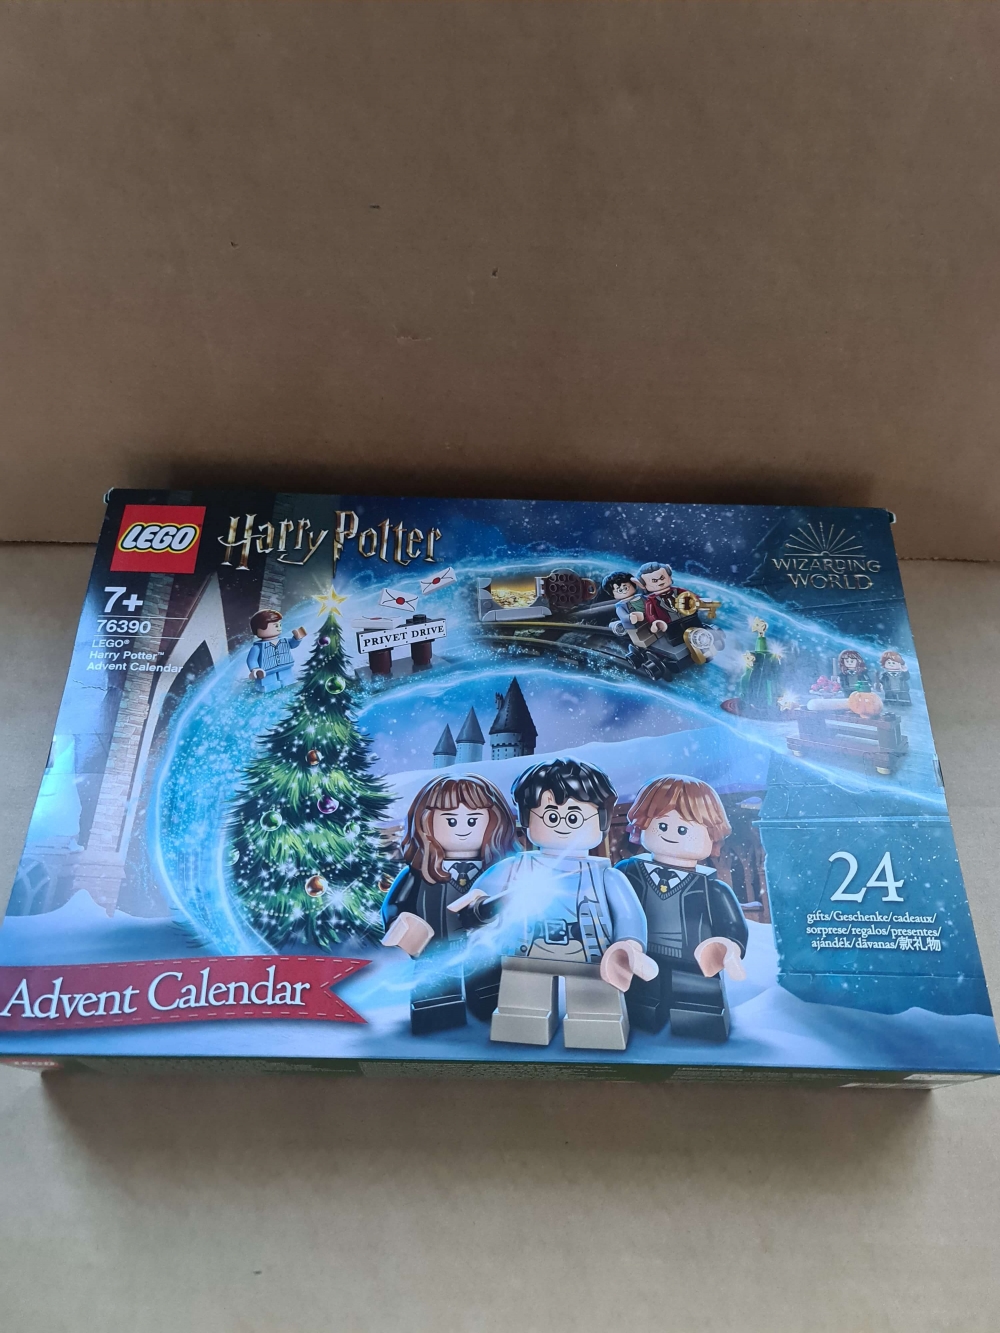 Sett 76390 fra Lego Holiday&Event : Advent : Harry Potter serien.
Ny og forseglet.